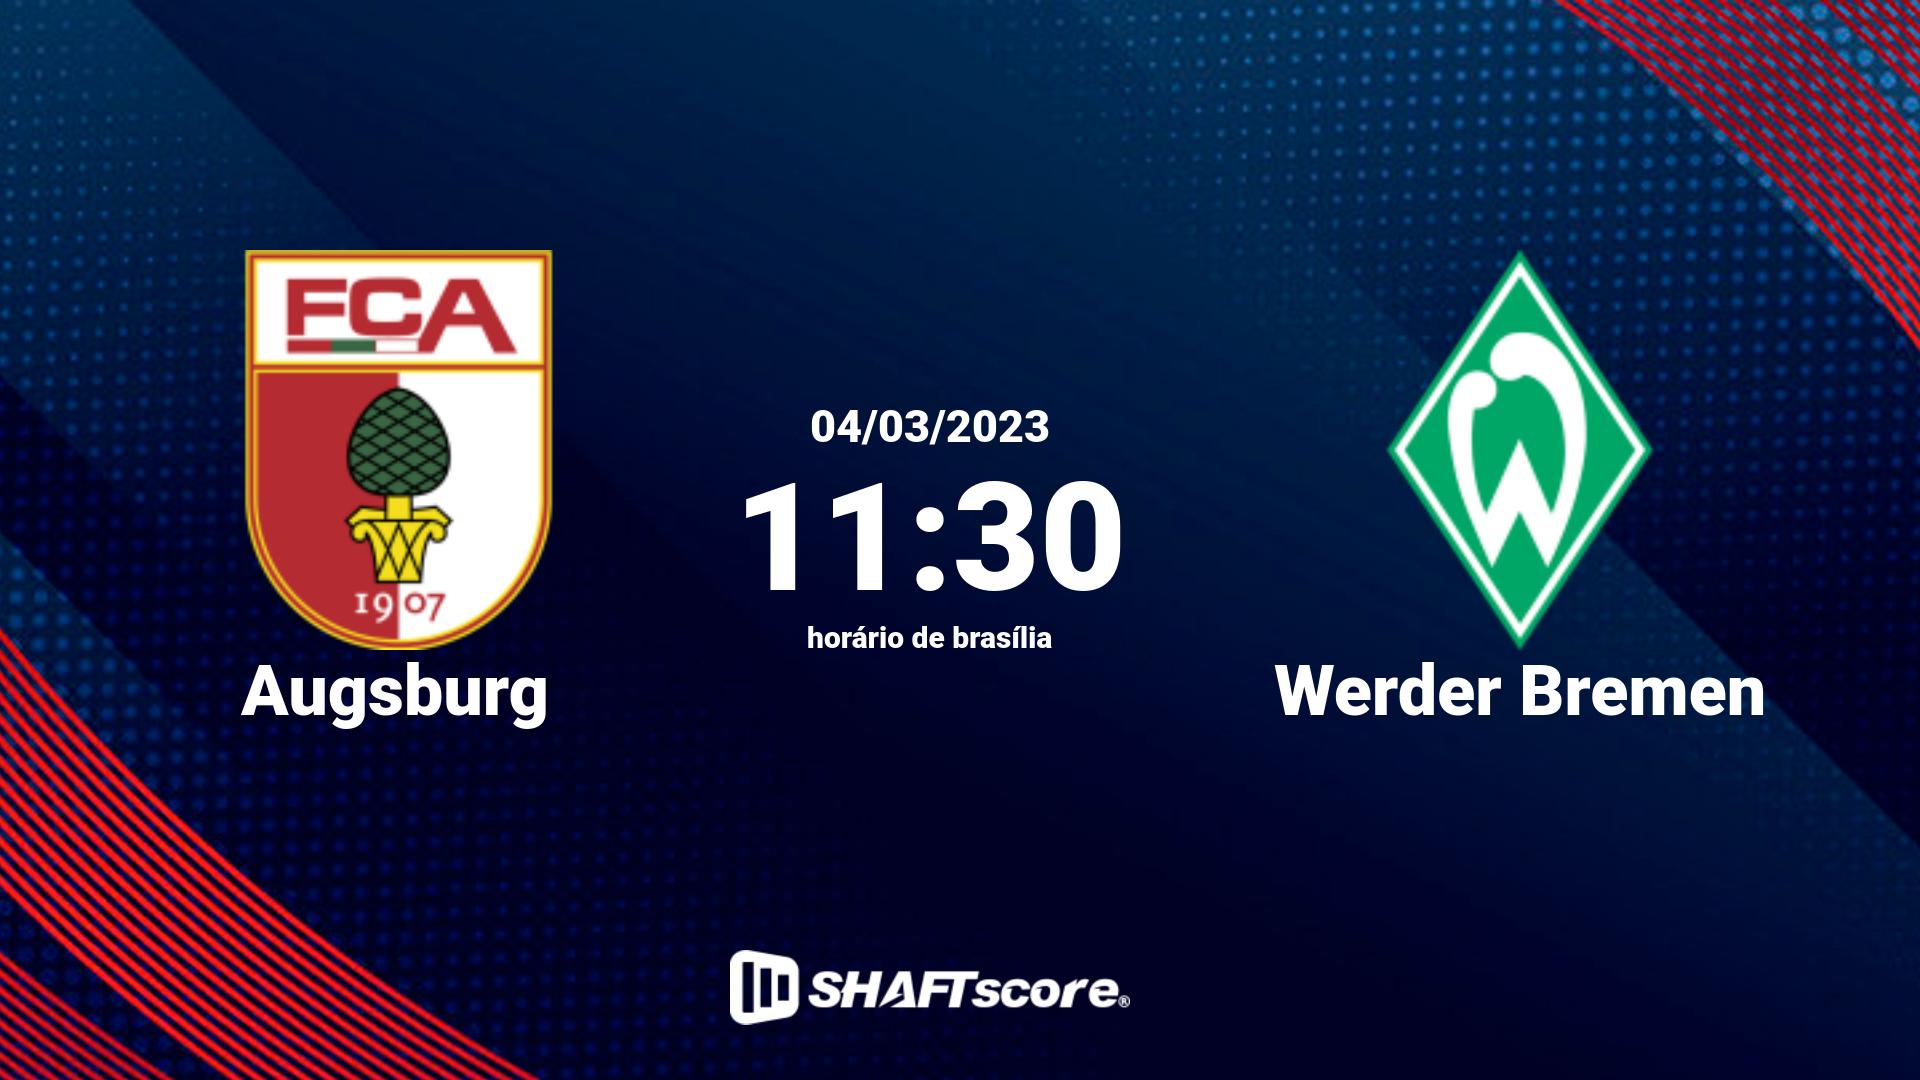 Estatísticas do jogo Augsburg vs Werder Bremen 04.03 11:30